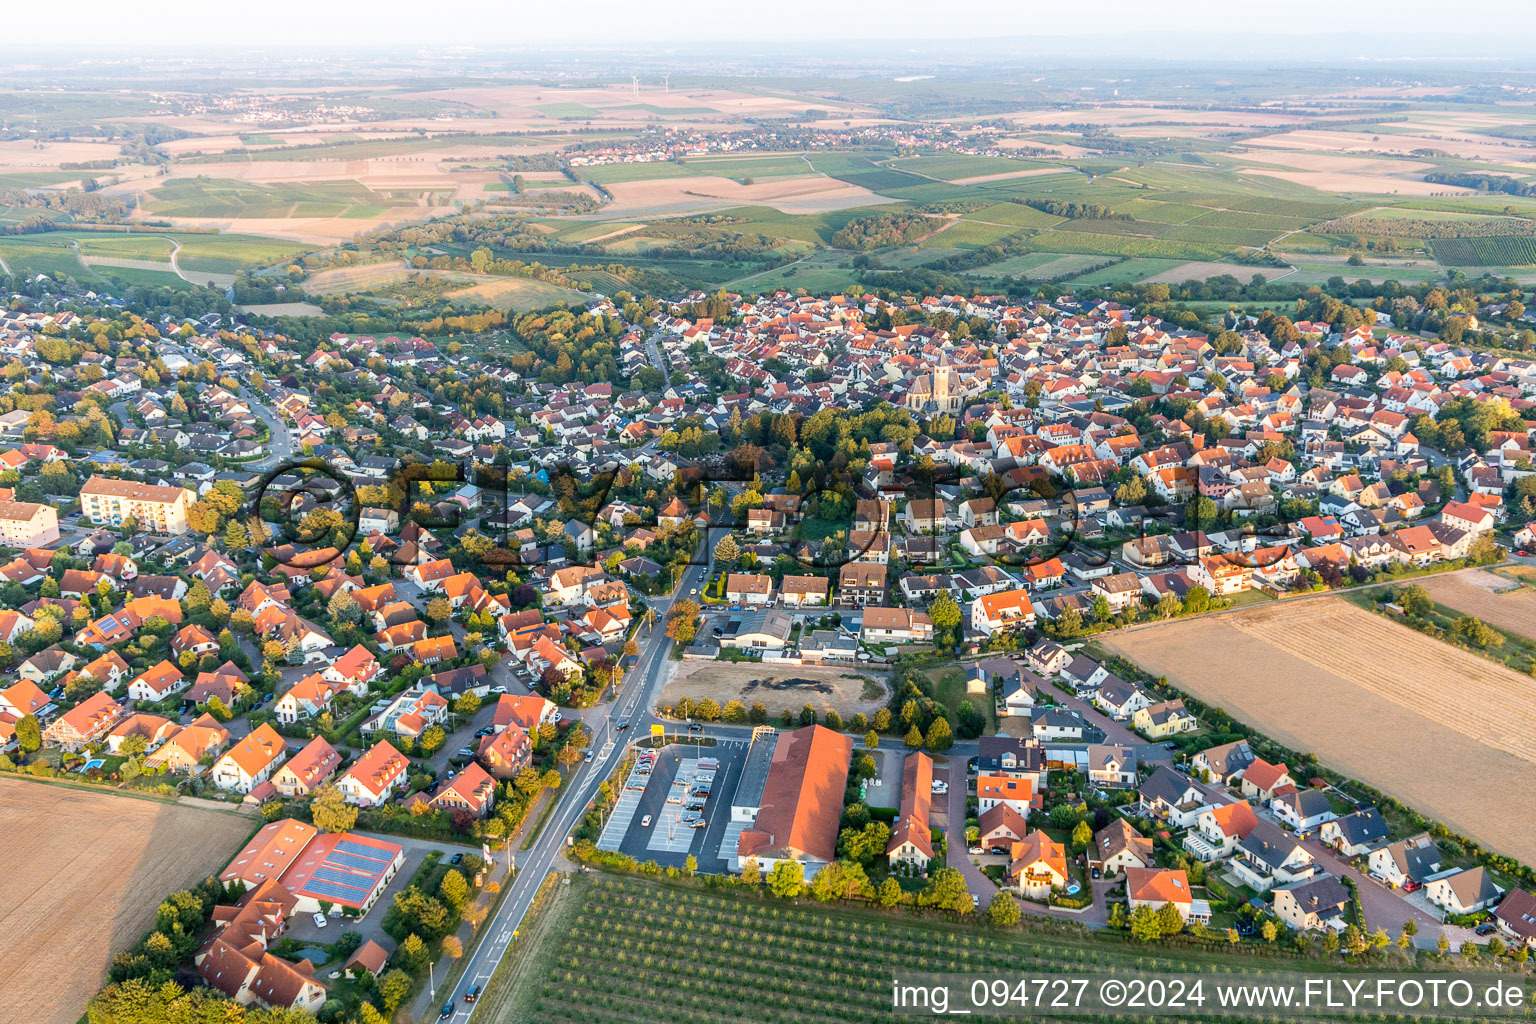 Vue aérienne de Champs agricoles et surfaces utilisables à Zornheim dans le département Rhénanie-Palatinat, Allemagne